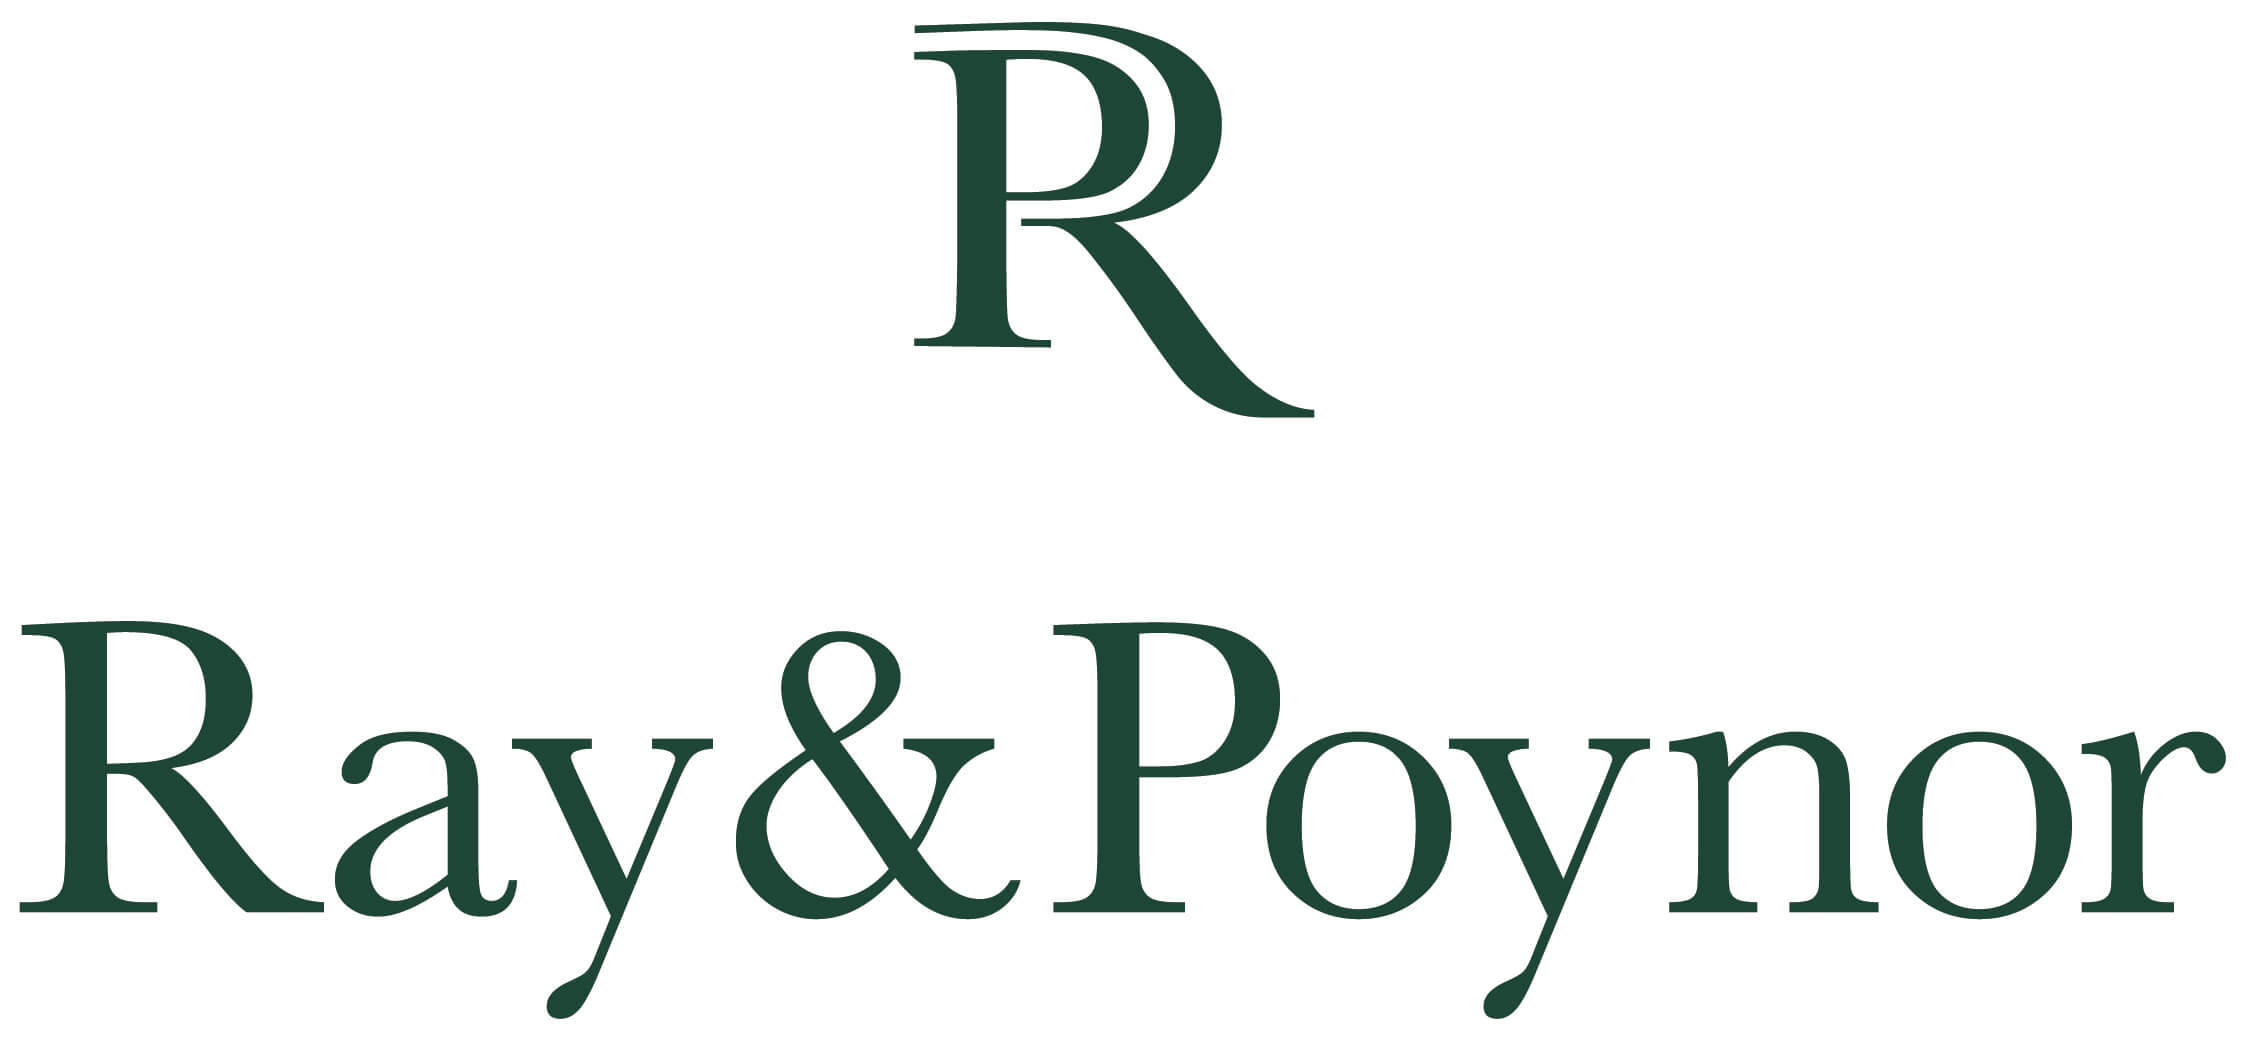 Ray and Poynor Logo